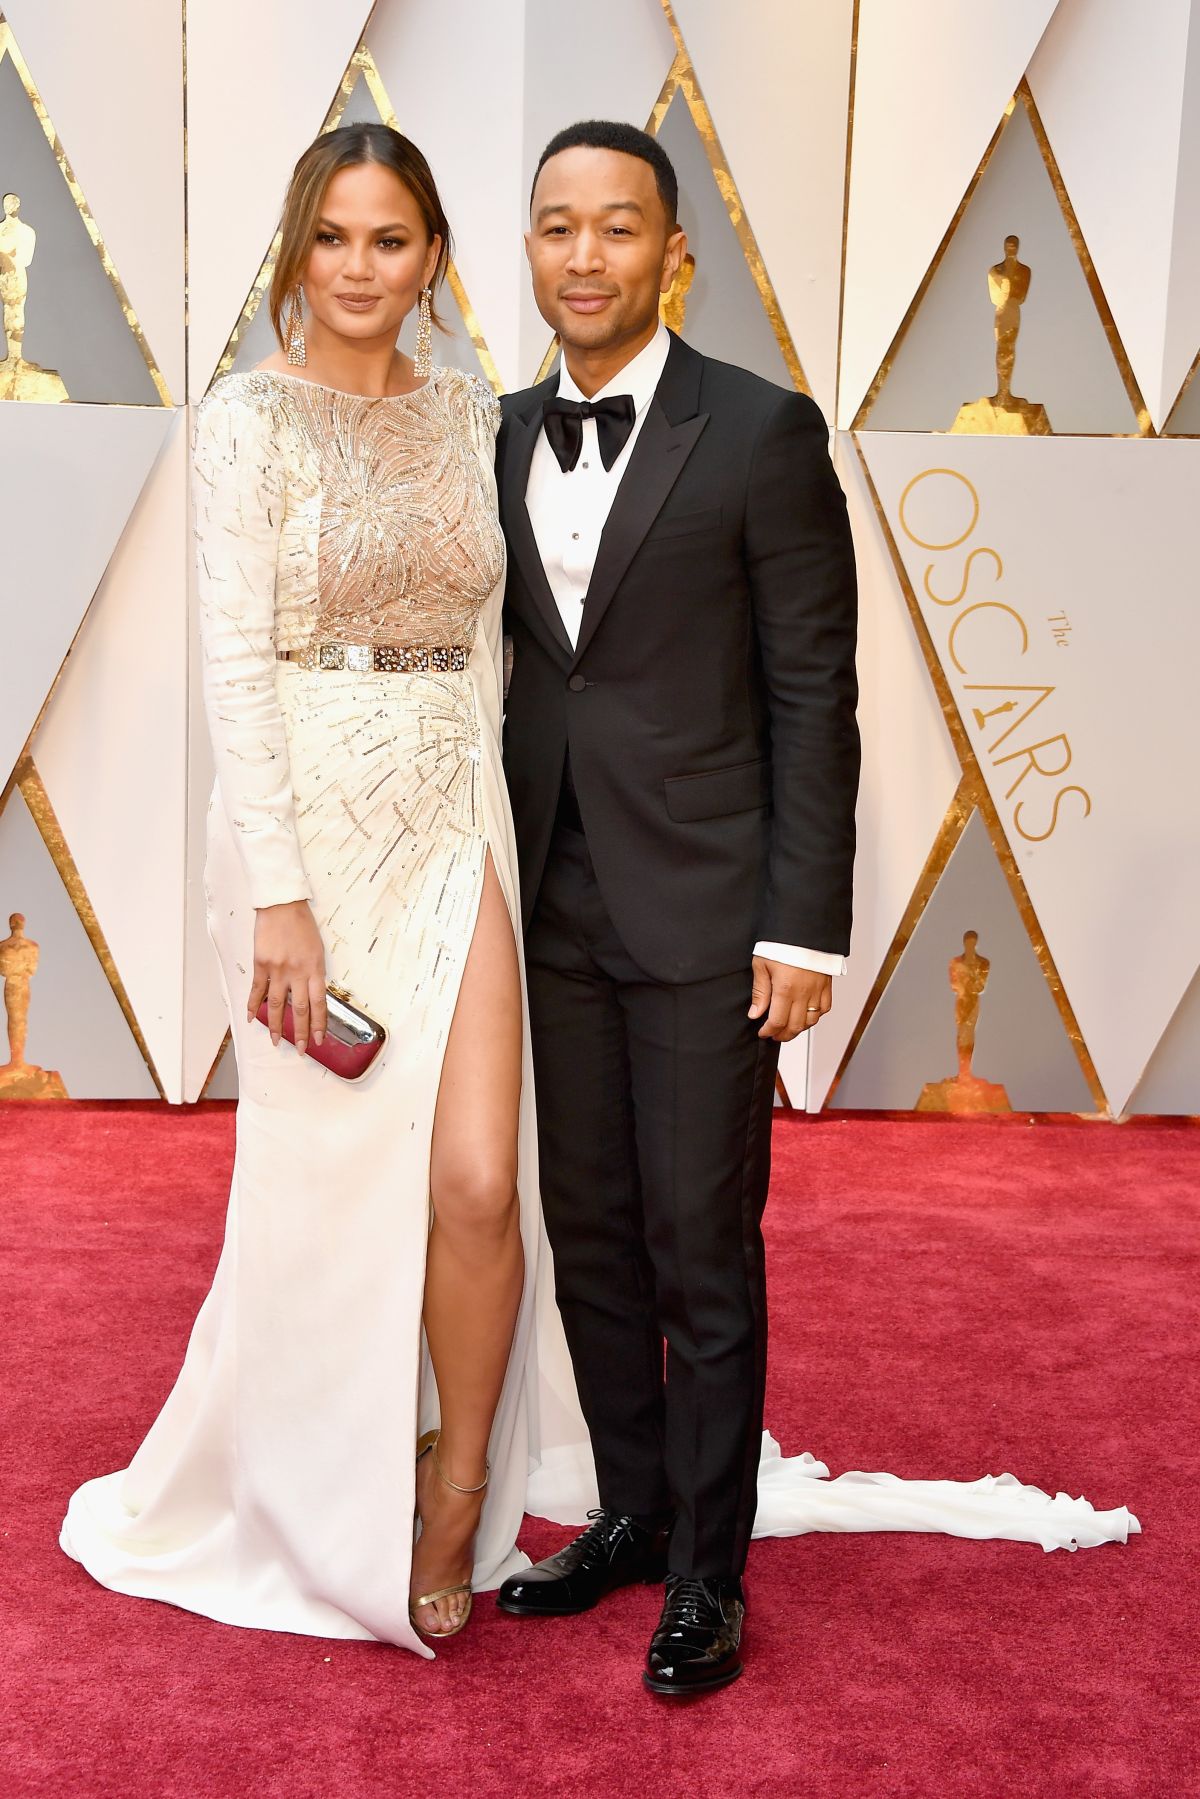 Hottest Oscar Couples!